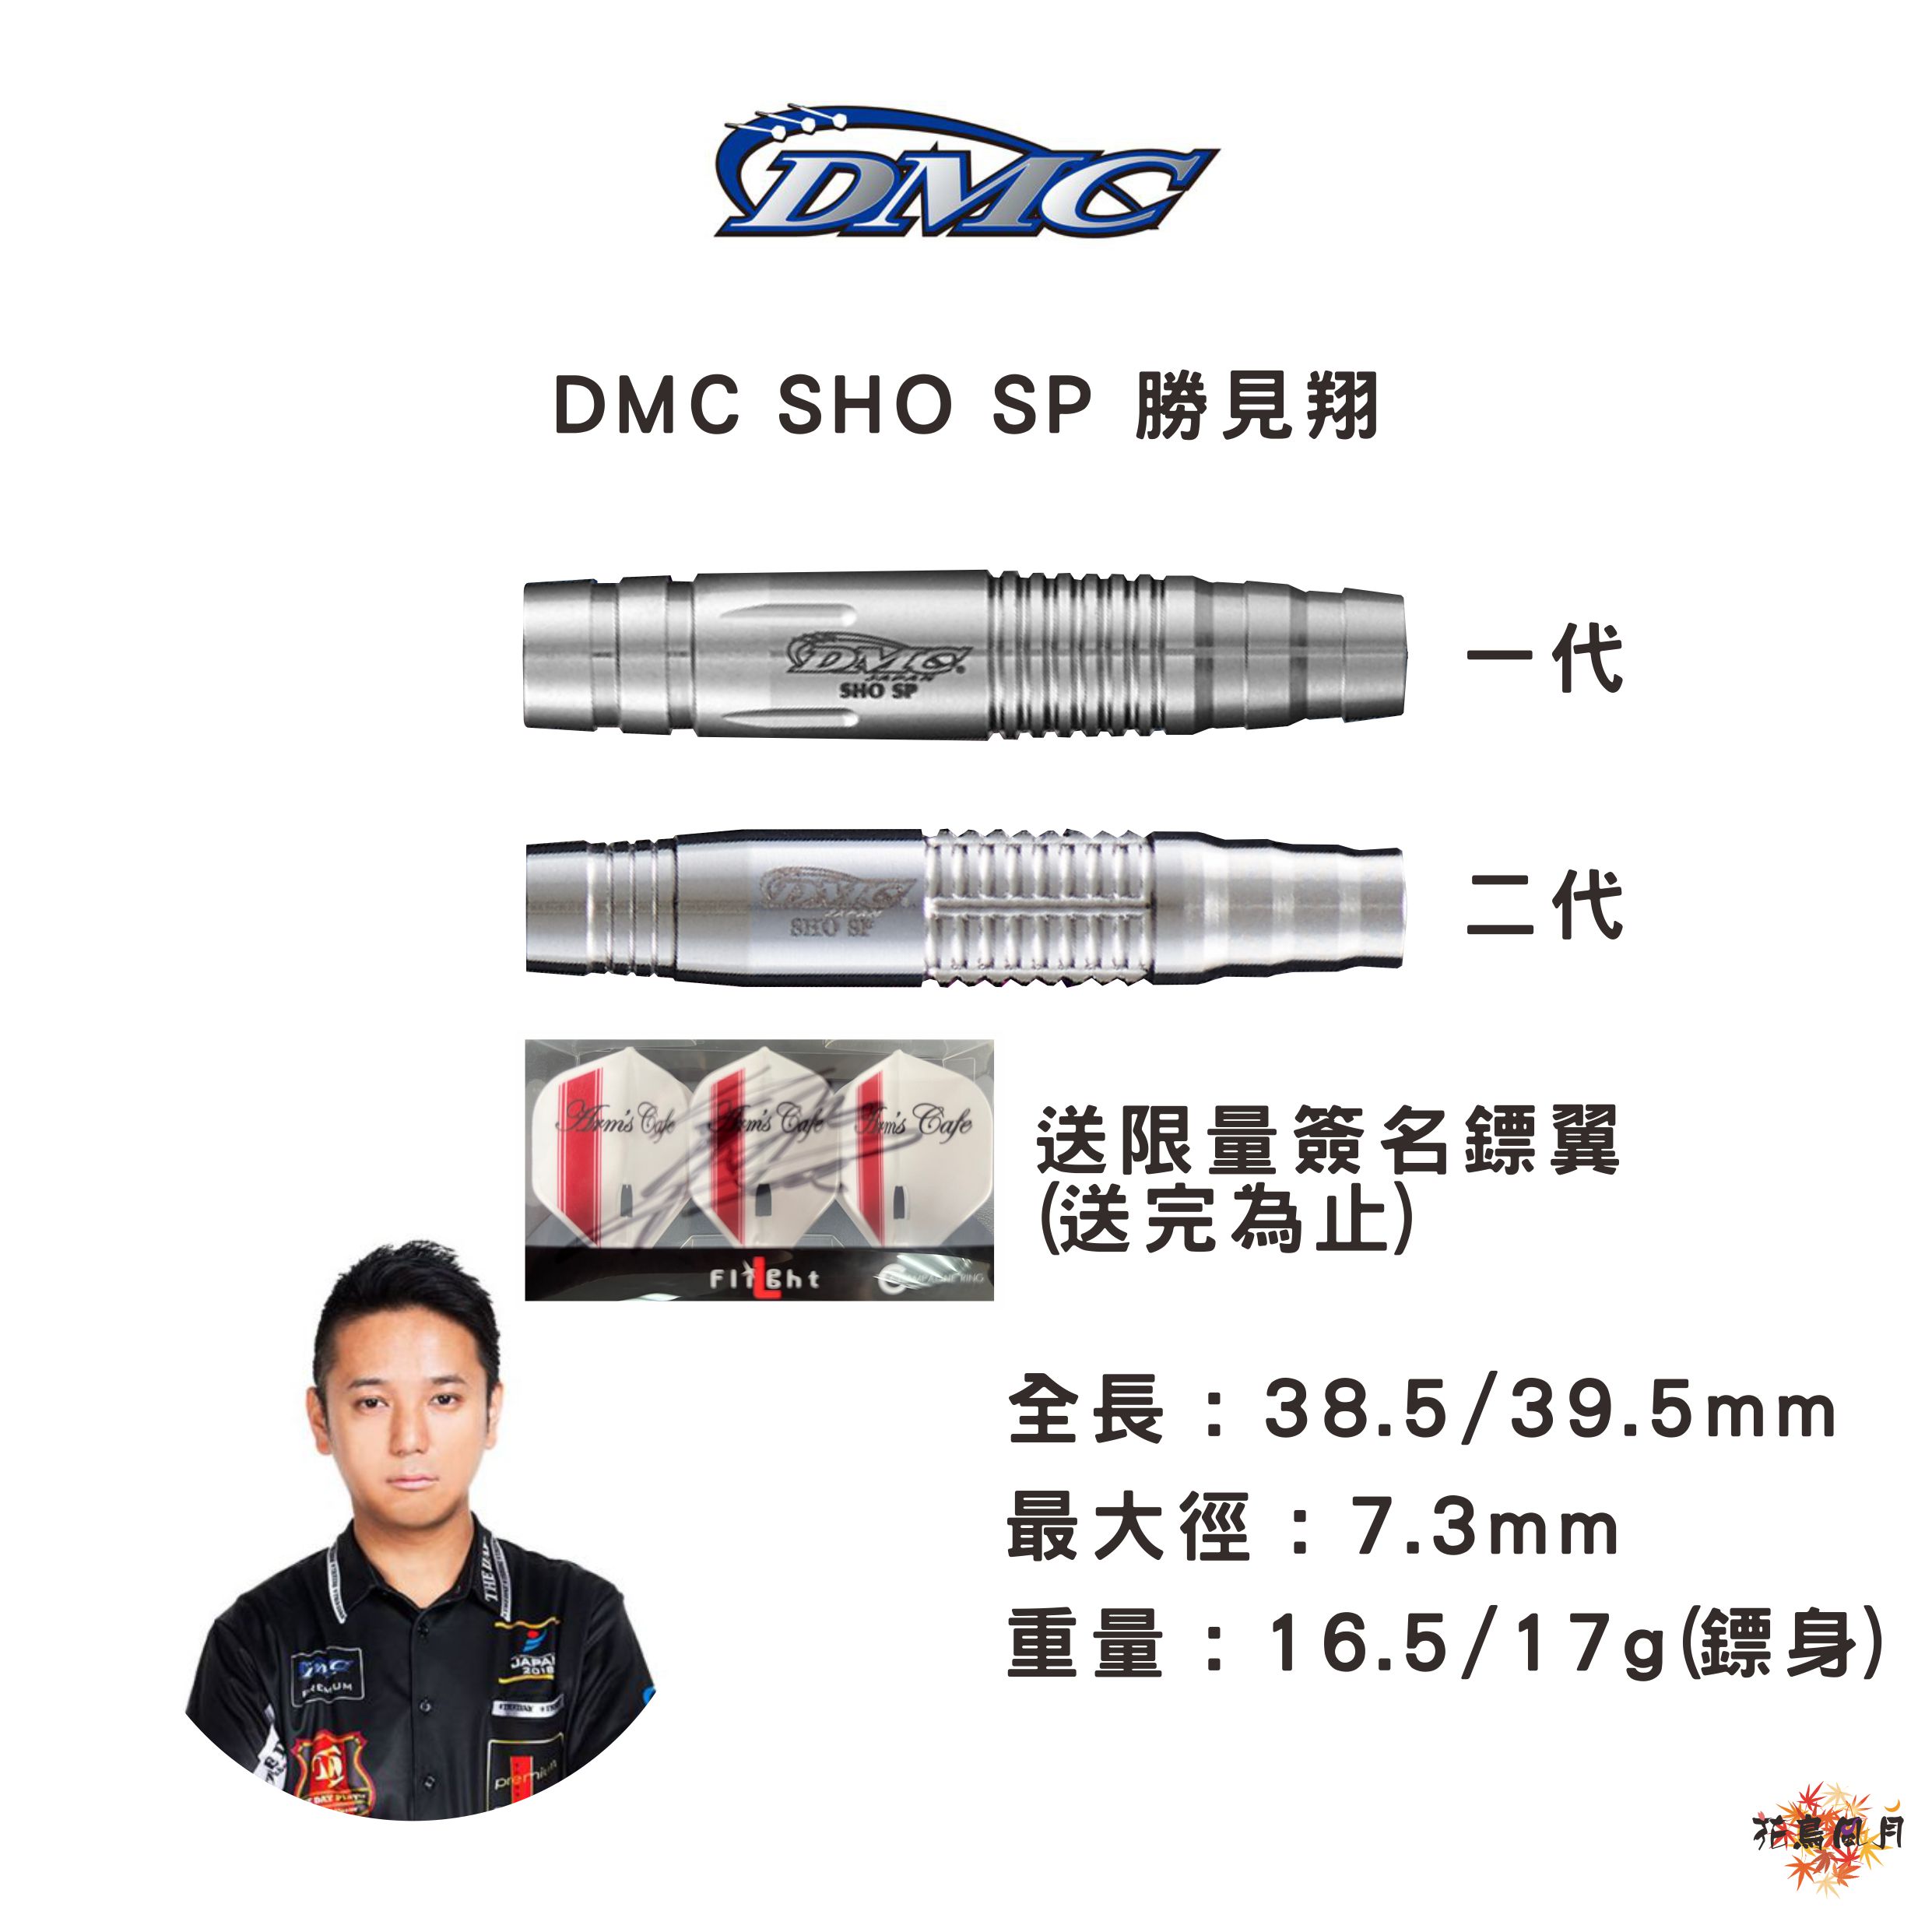 DMC-Sho-SP